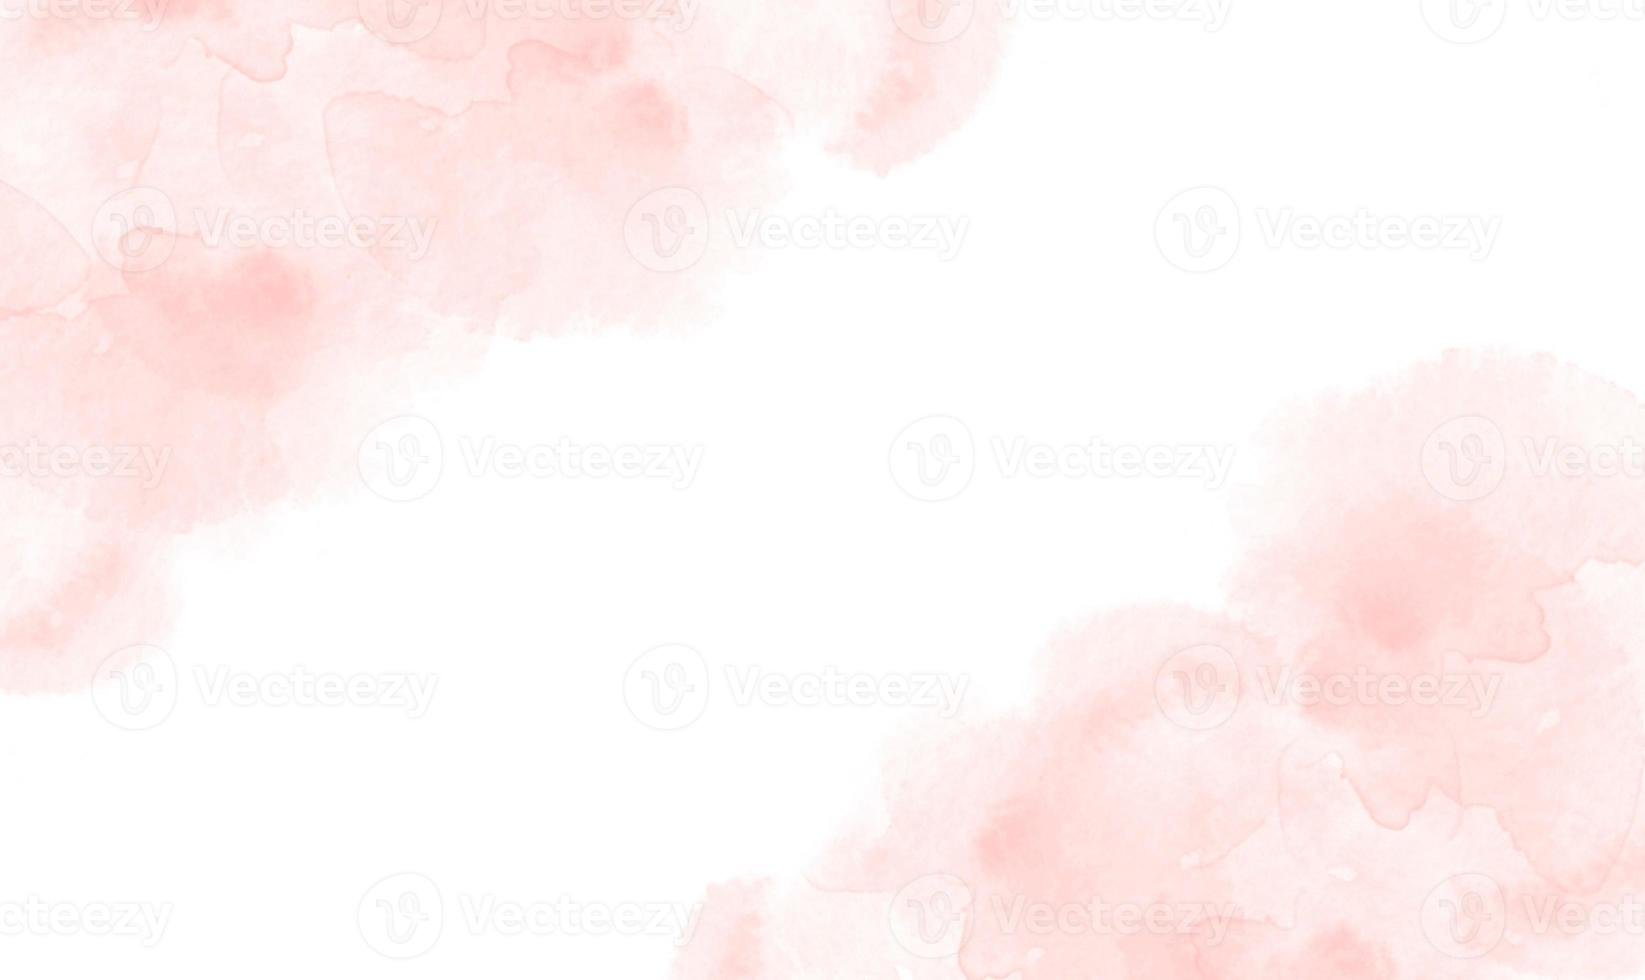 abstrakte roségoldfarbene aquarell- oder alkoholtintenkunst mit weißem hintergrund, pastellmarmor-zeichnungseffekt. llustration Design-Vorlage für Hochzeitseinladung, Dekoration, Banner, Hintergrund foto